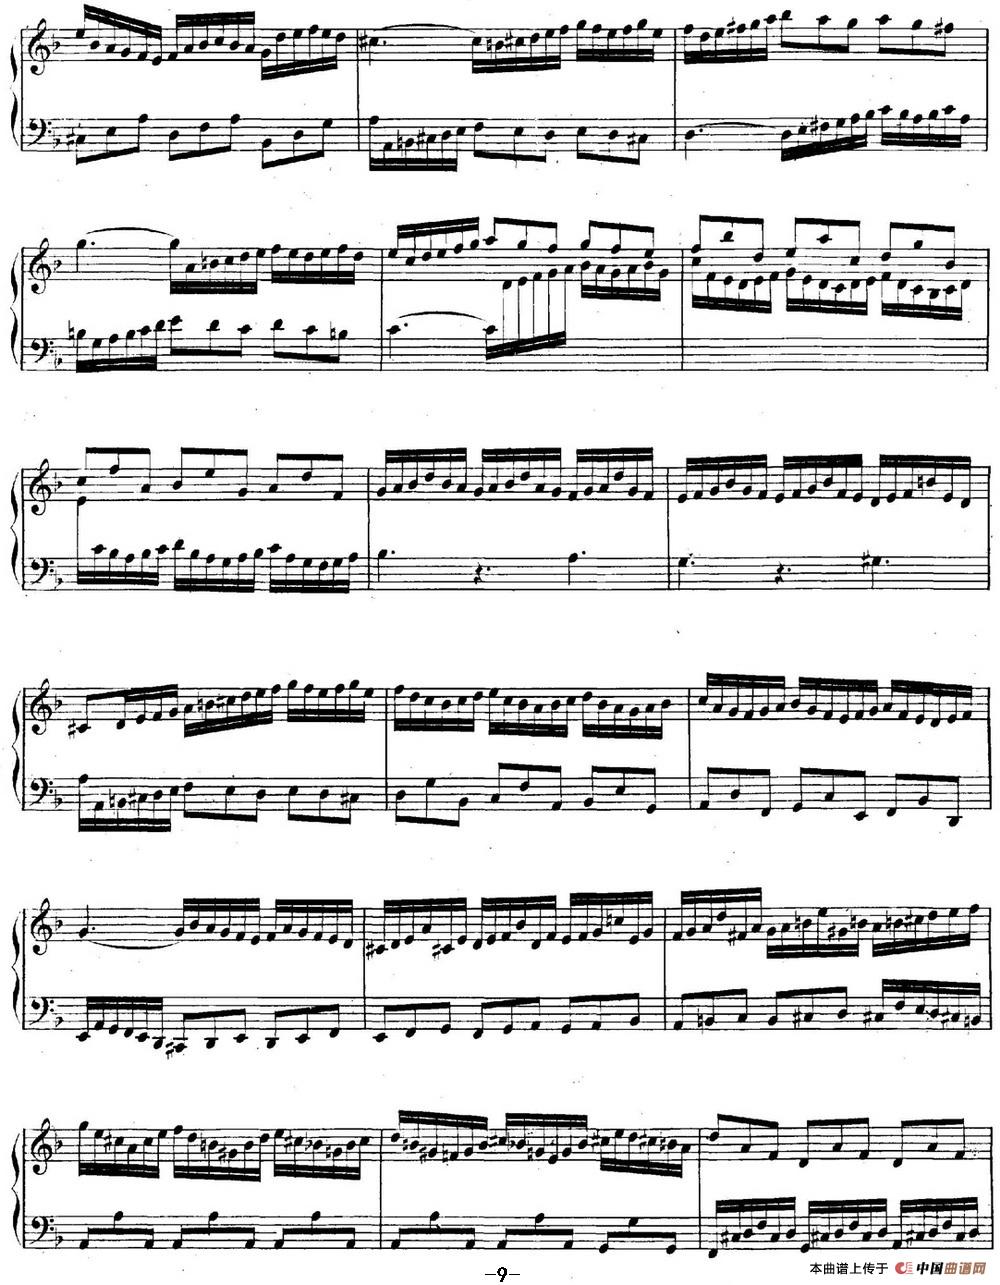 《英国组曲No.6 巴赫 d小调 6th Suite BWV 811》钢琴曲谱图分享